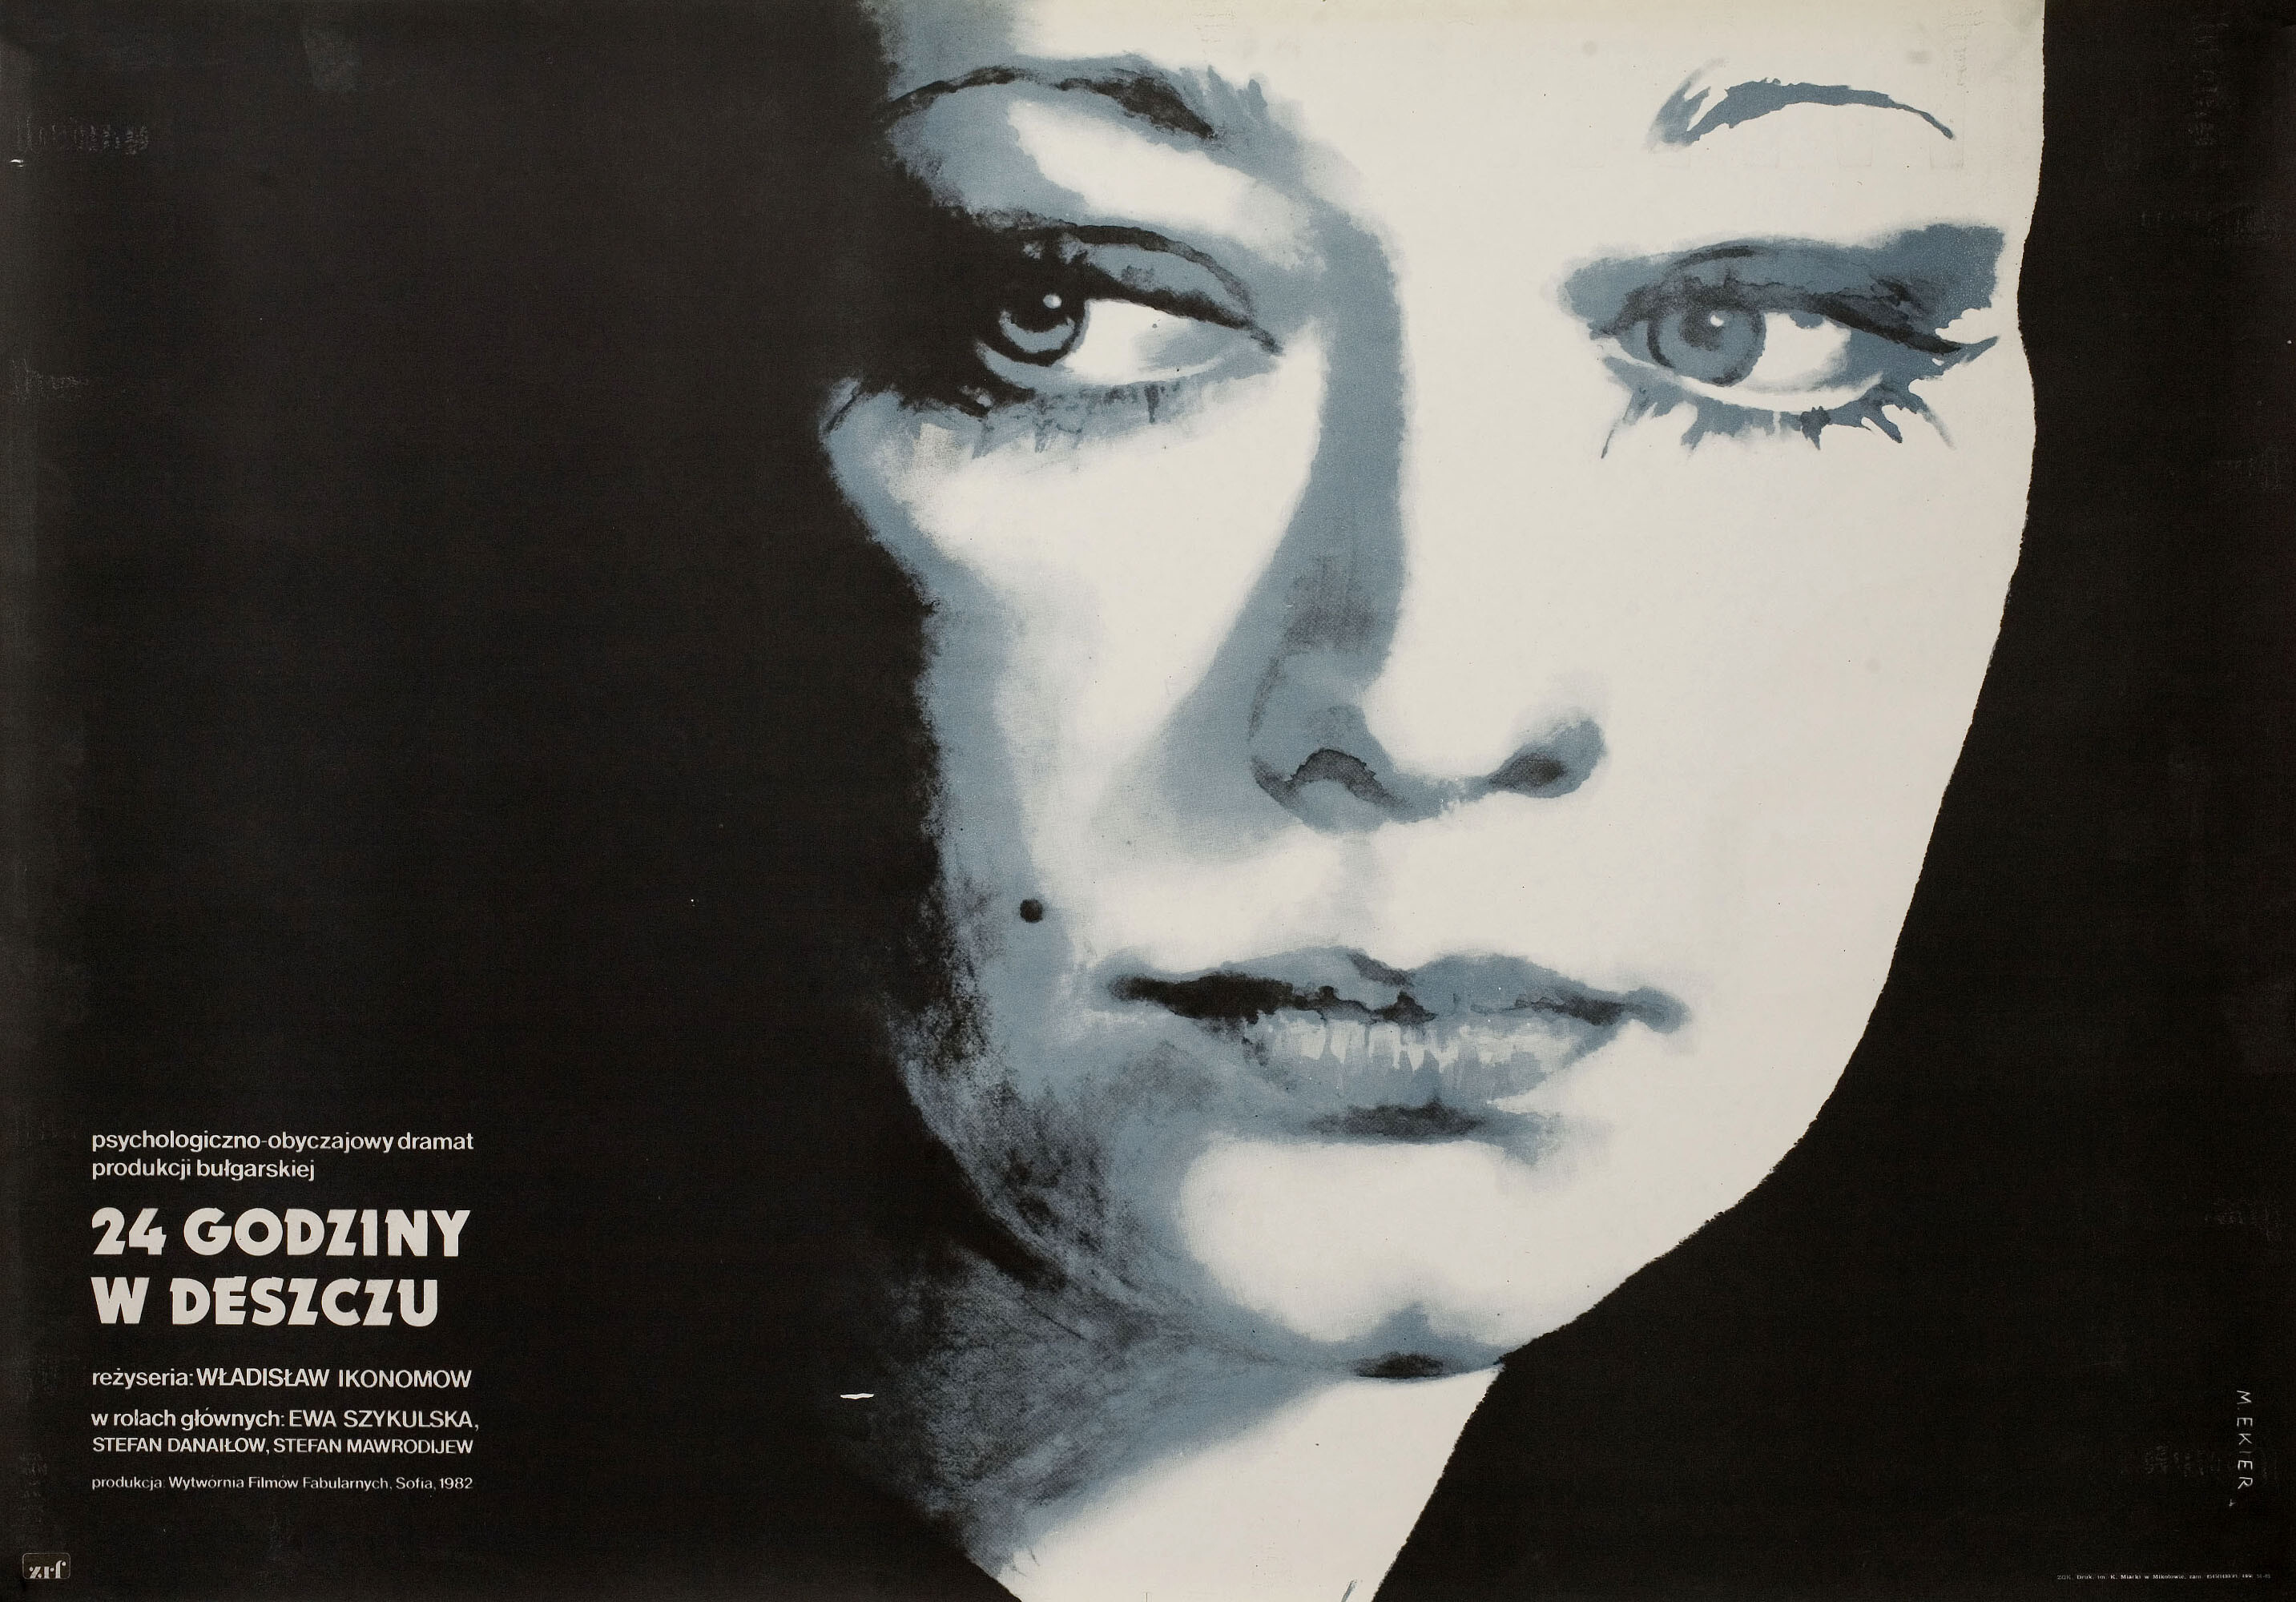 24 часа дождь (24 chasa dazhd, 1982), режиссёр Владислав Икономов, польский плакат к фильму, 1982 год, автор Мекиер